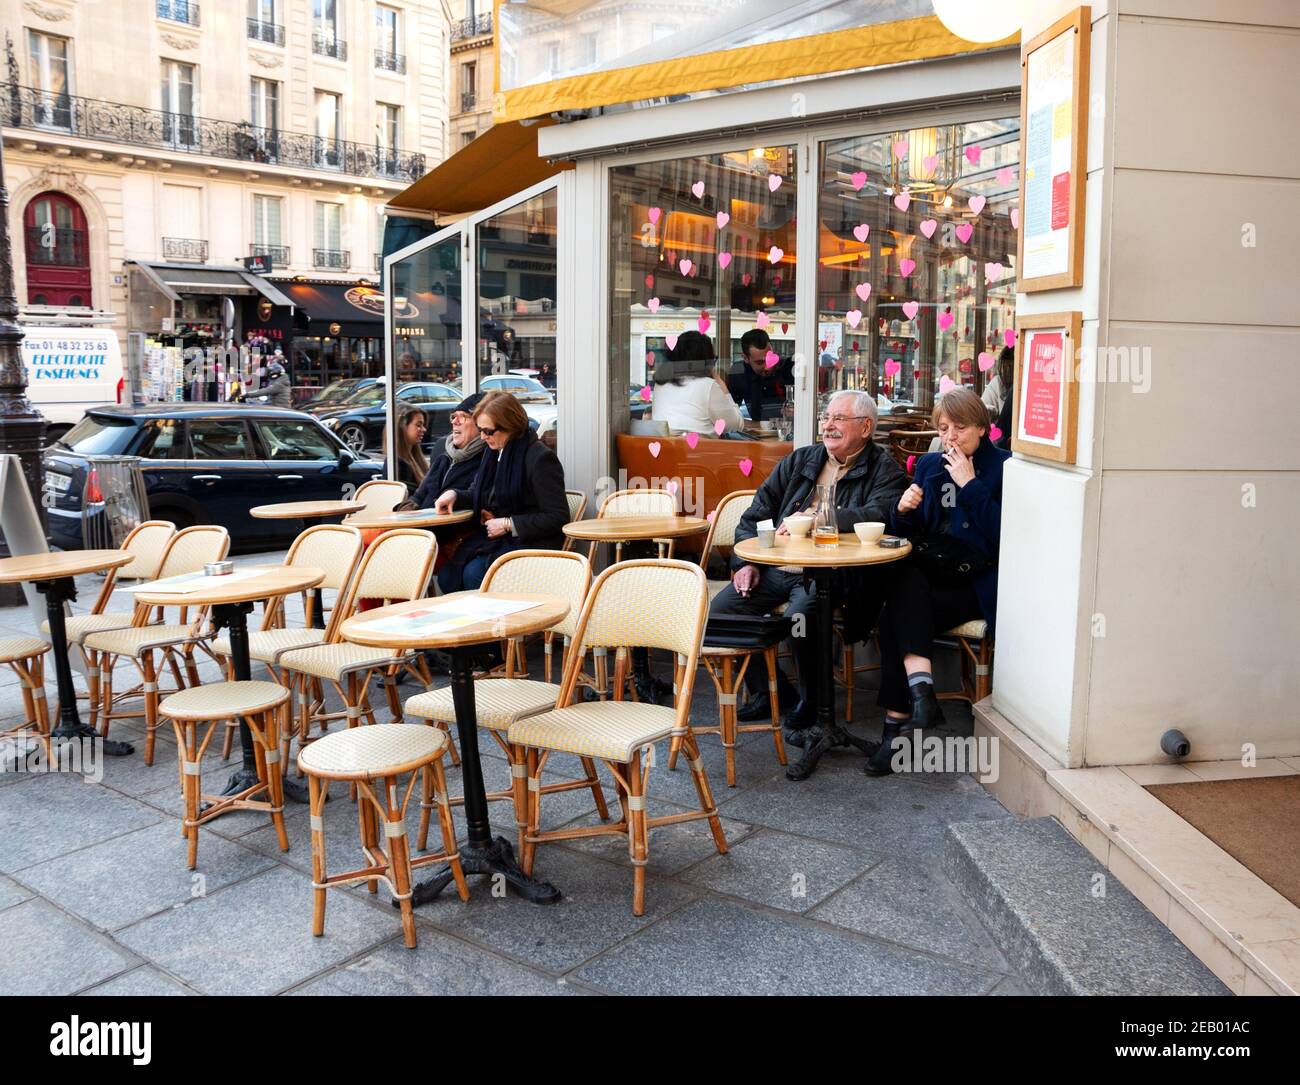 PARÍS, FRANCIA - 14 DE FEBRERO de 2019: La gente (y dos osos de peluche) se  sientan en la terraza y dentro de la cafetería en el barrio latino,  decorado para el